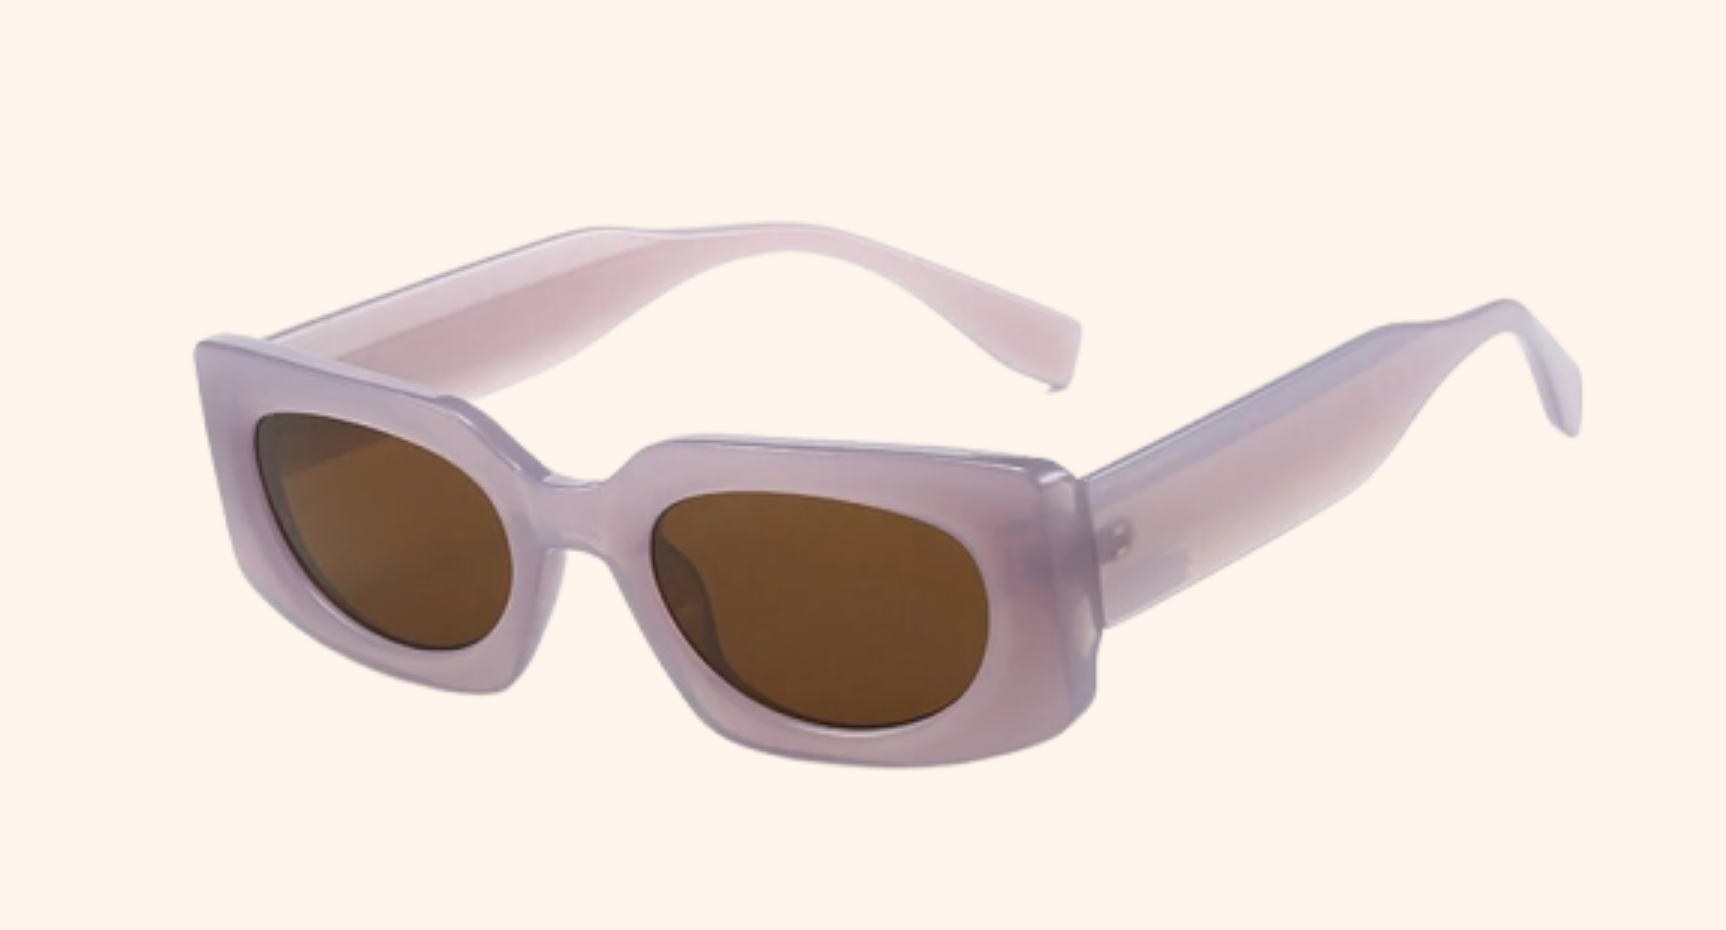 space cadet lunar sunglasses